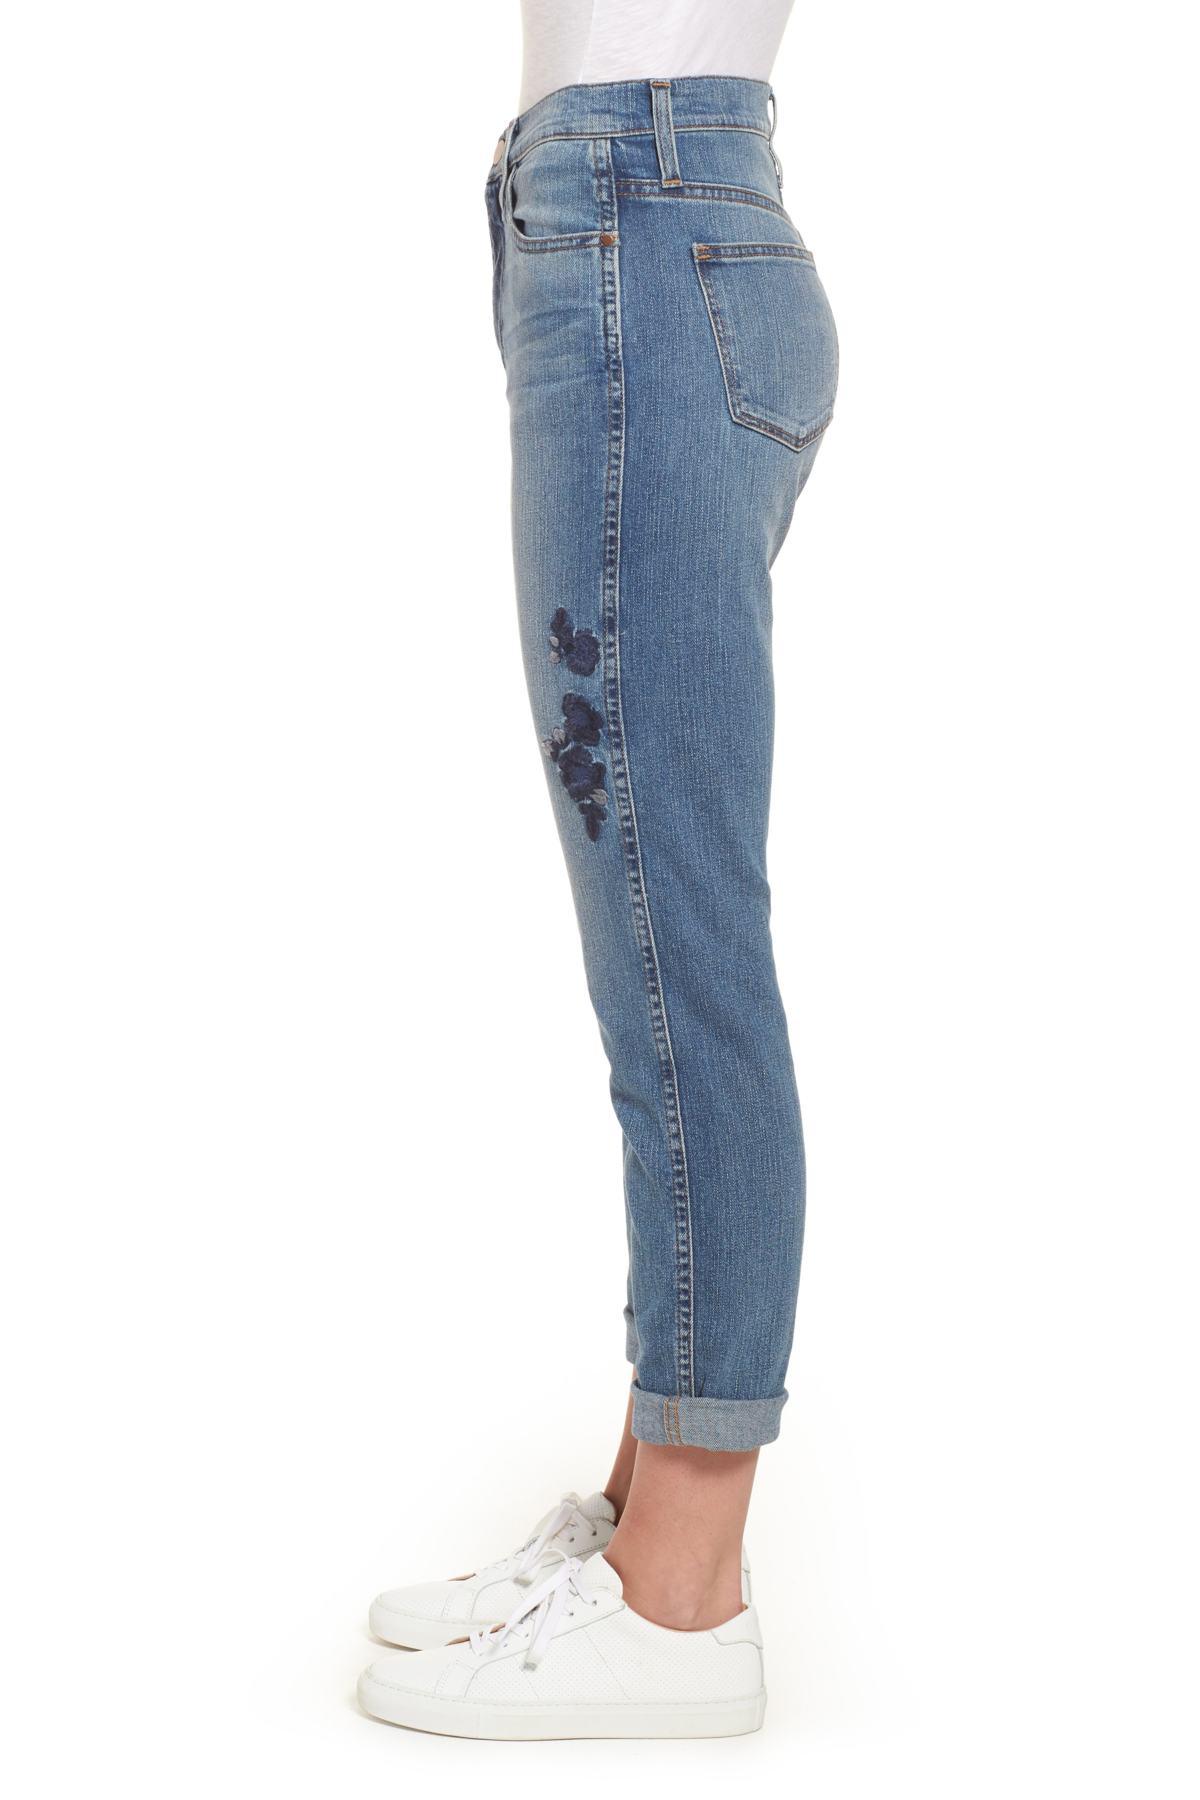 caslon jeans